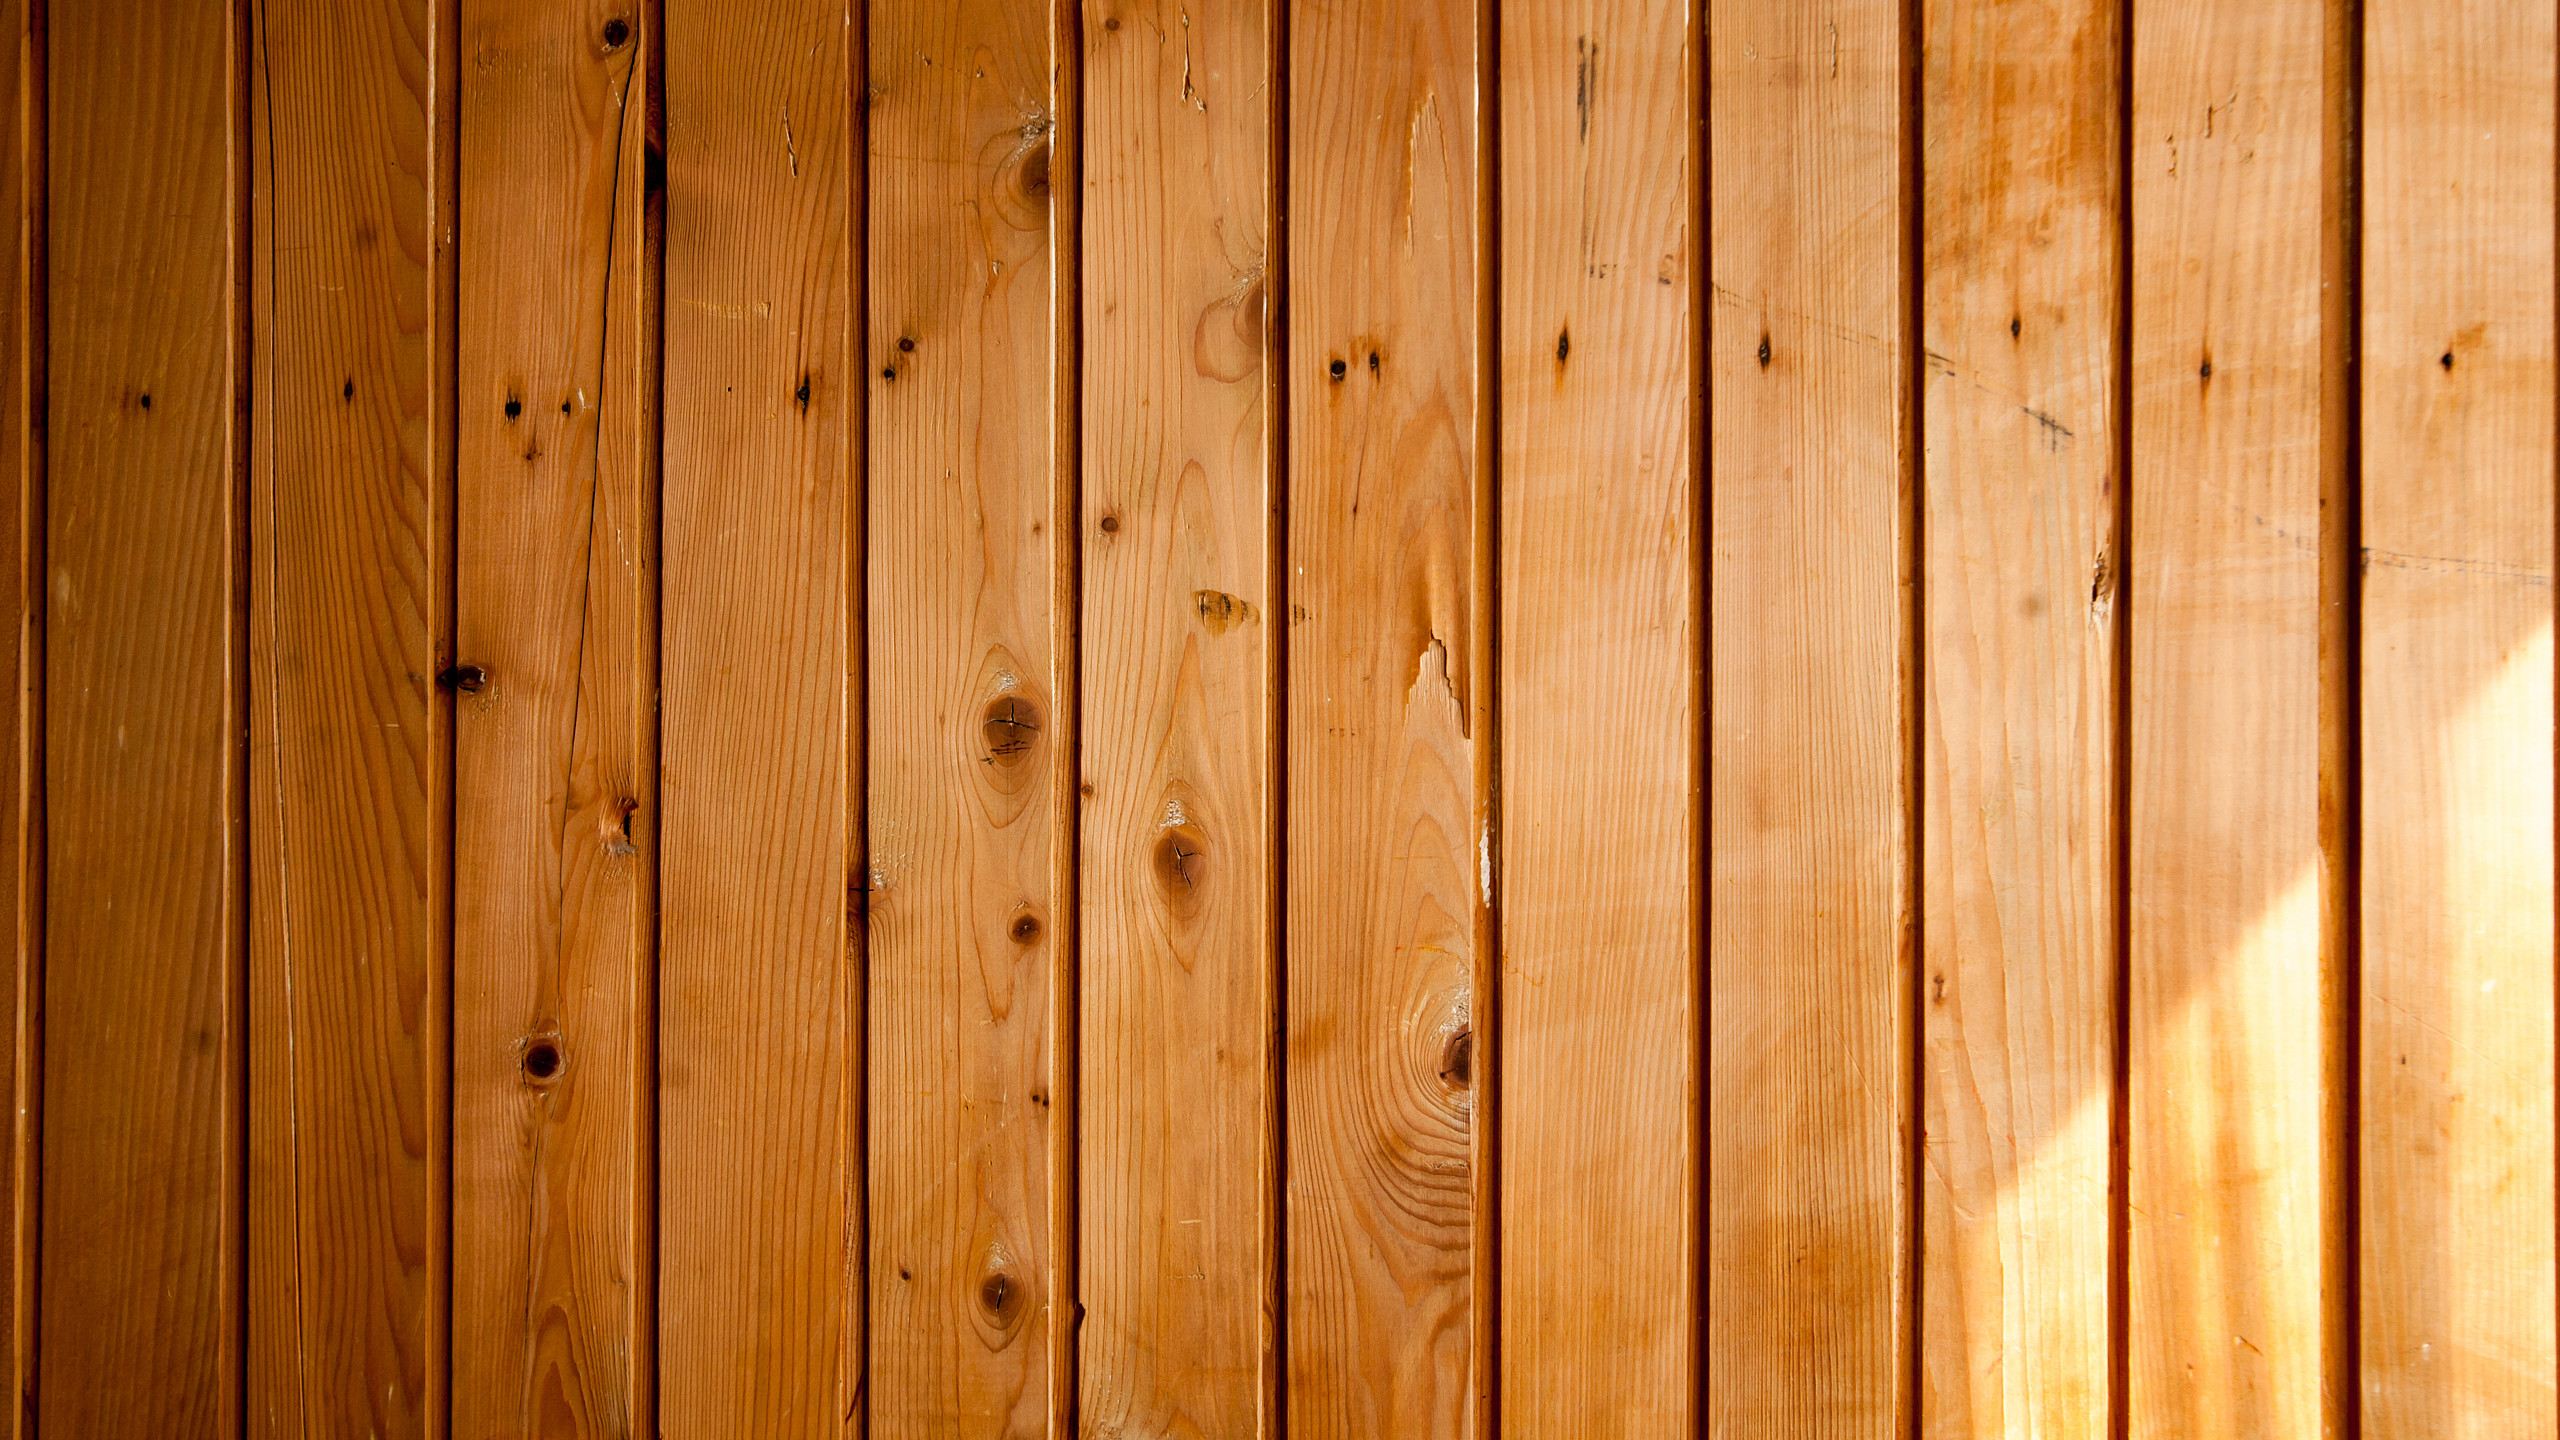 holz wallpaper,madera,mancha de madera,madera dura,tablón,tablas de madera